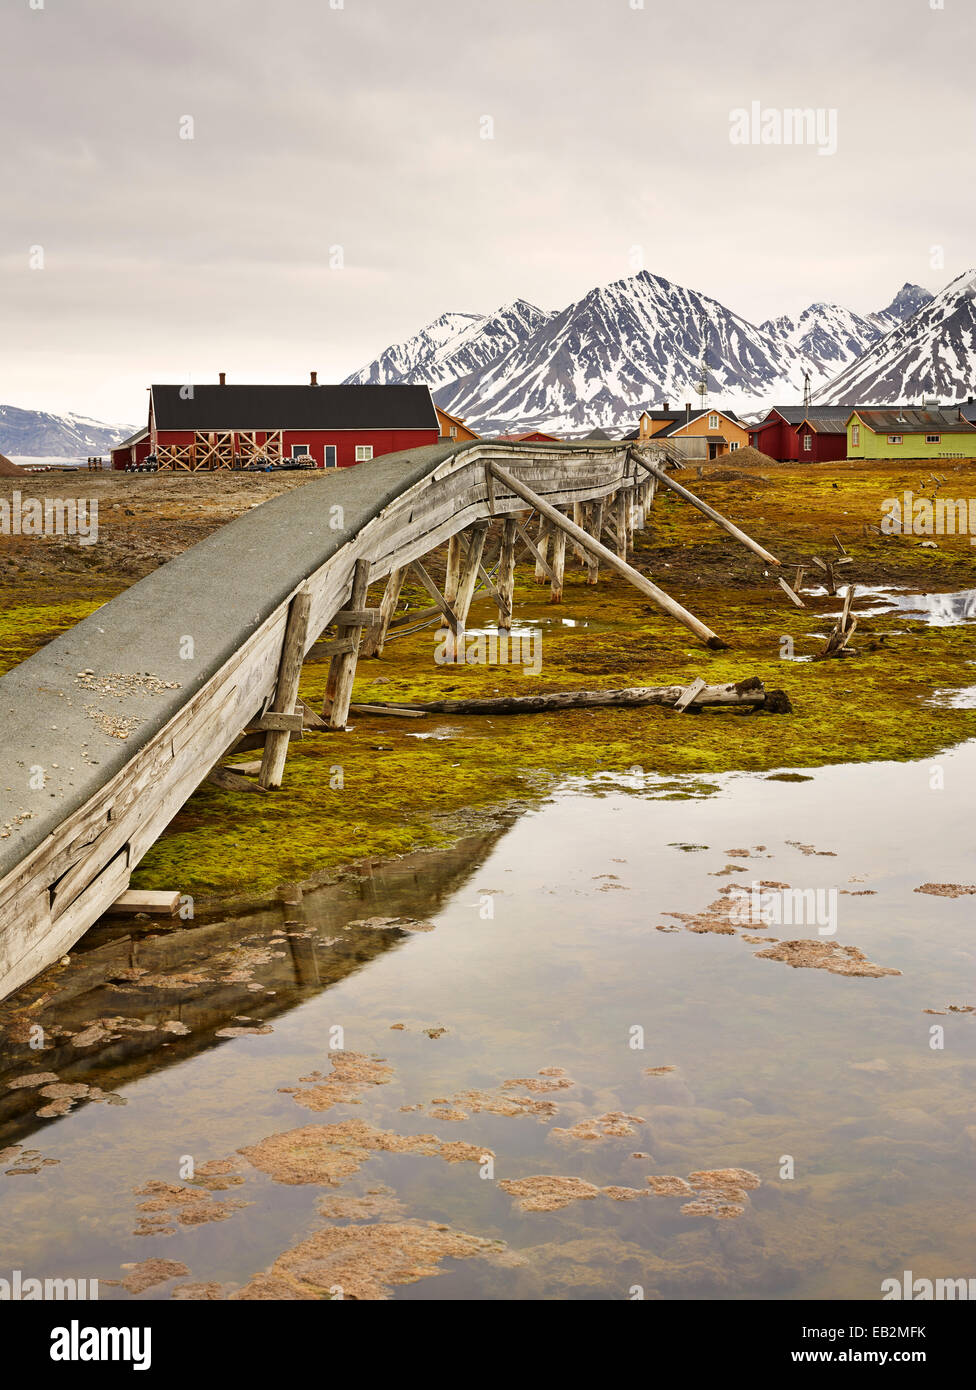 Vecchia conduttura di acqua, su palafitte a causa del permafrost, isola Spitsbergen, arcipelago delle Svalbard Isole Svalbard e Jan Mayen Foto Stock